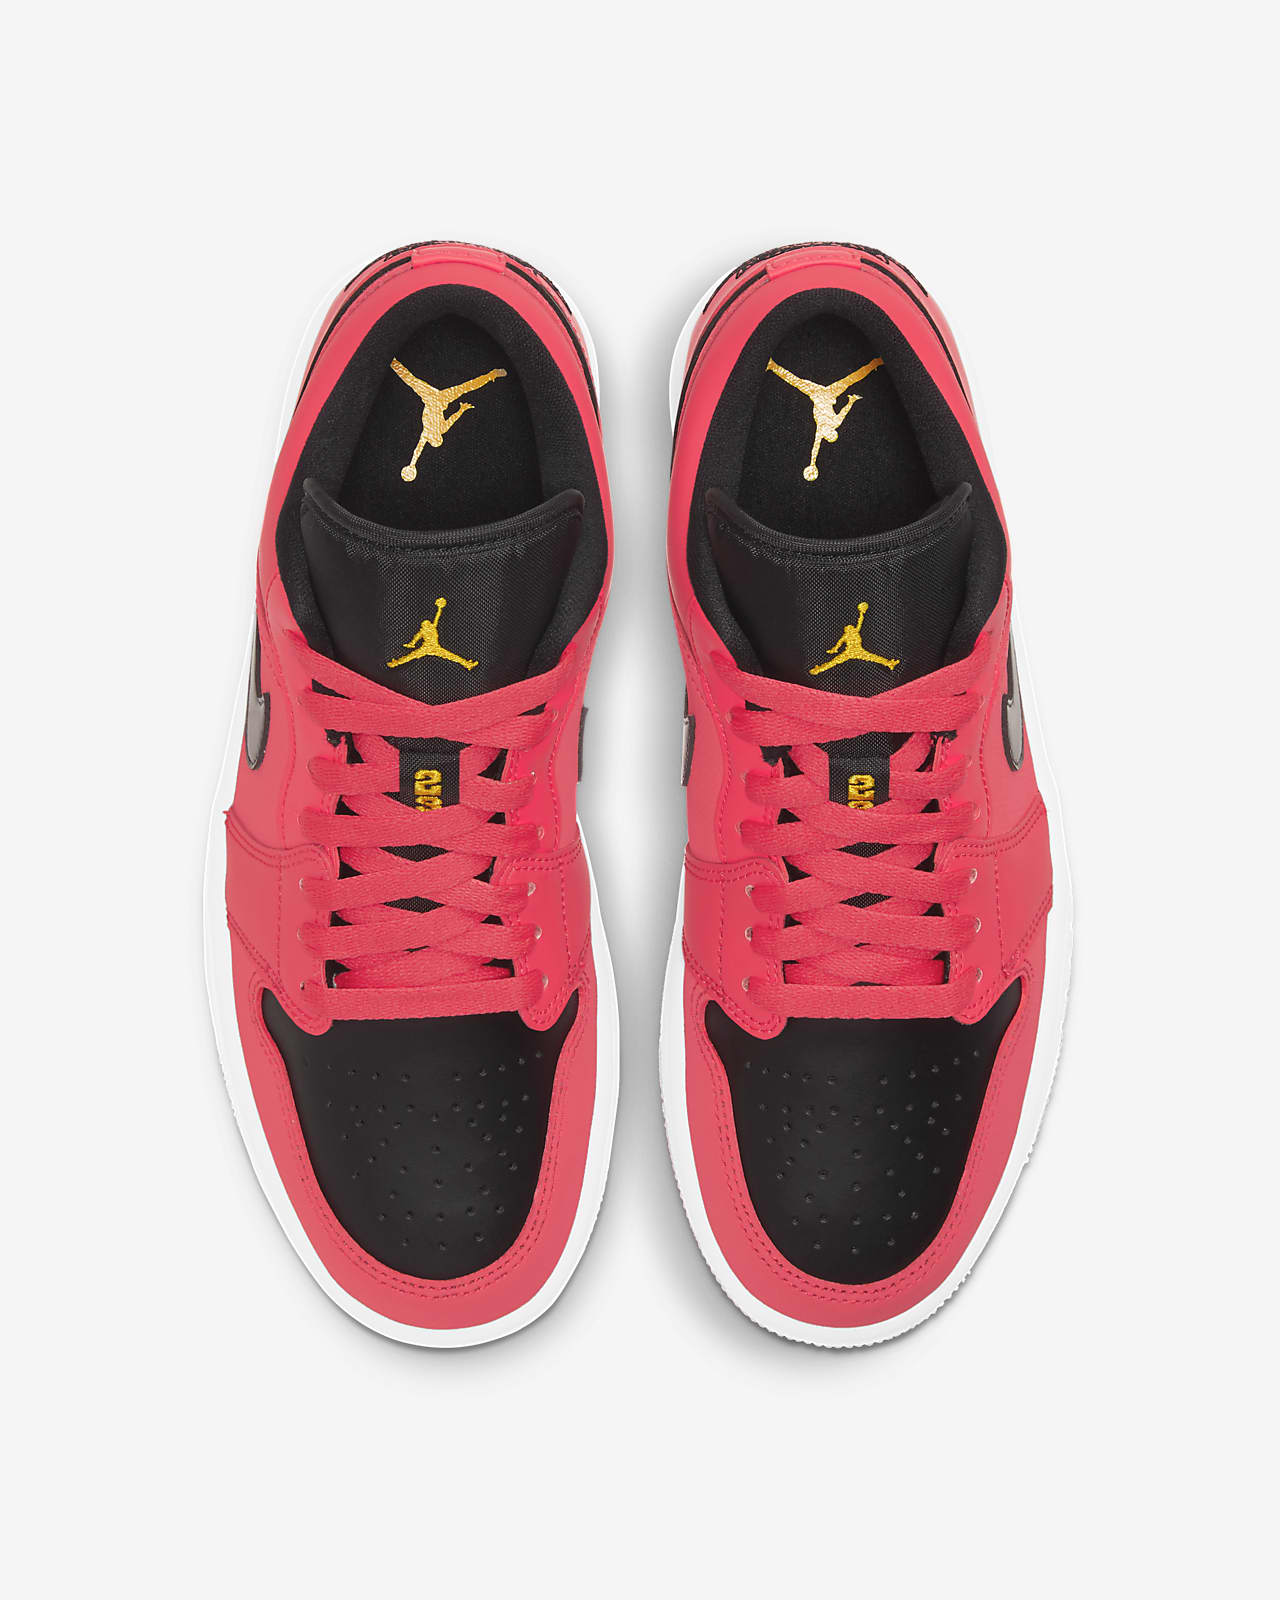 Air Jordan 1 Low Women's Shoe. Nike JP